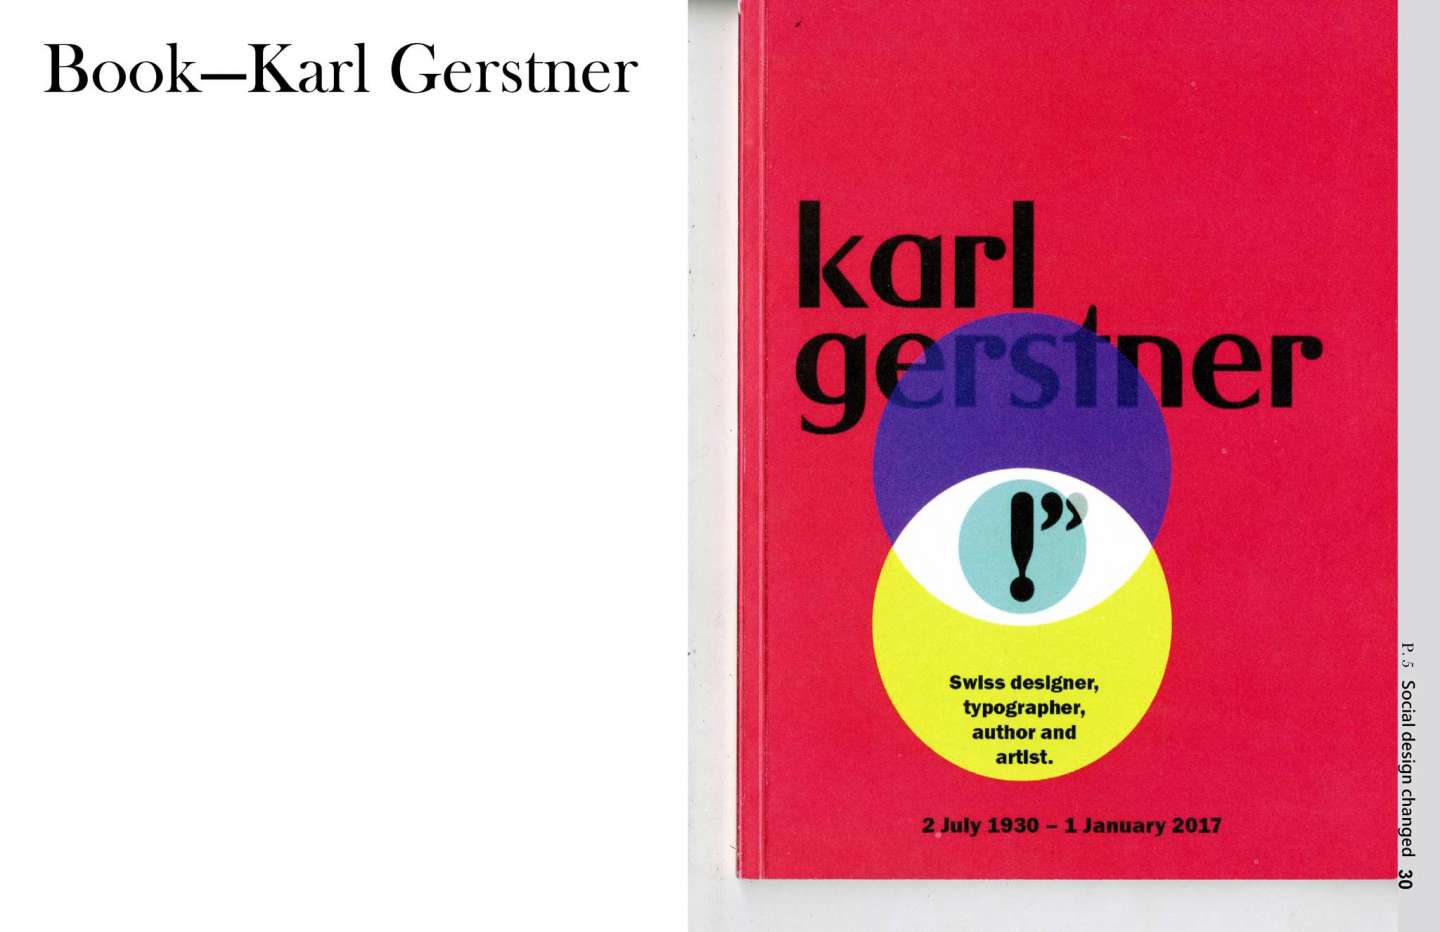 Designer—Karl Gerstner